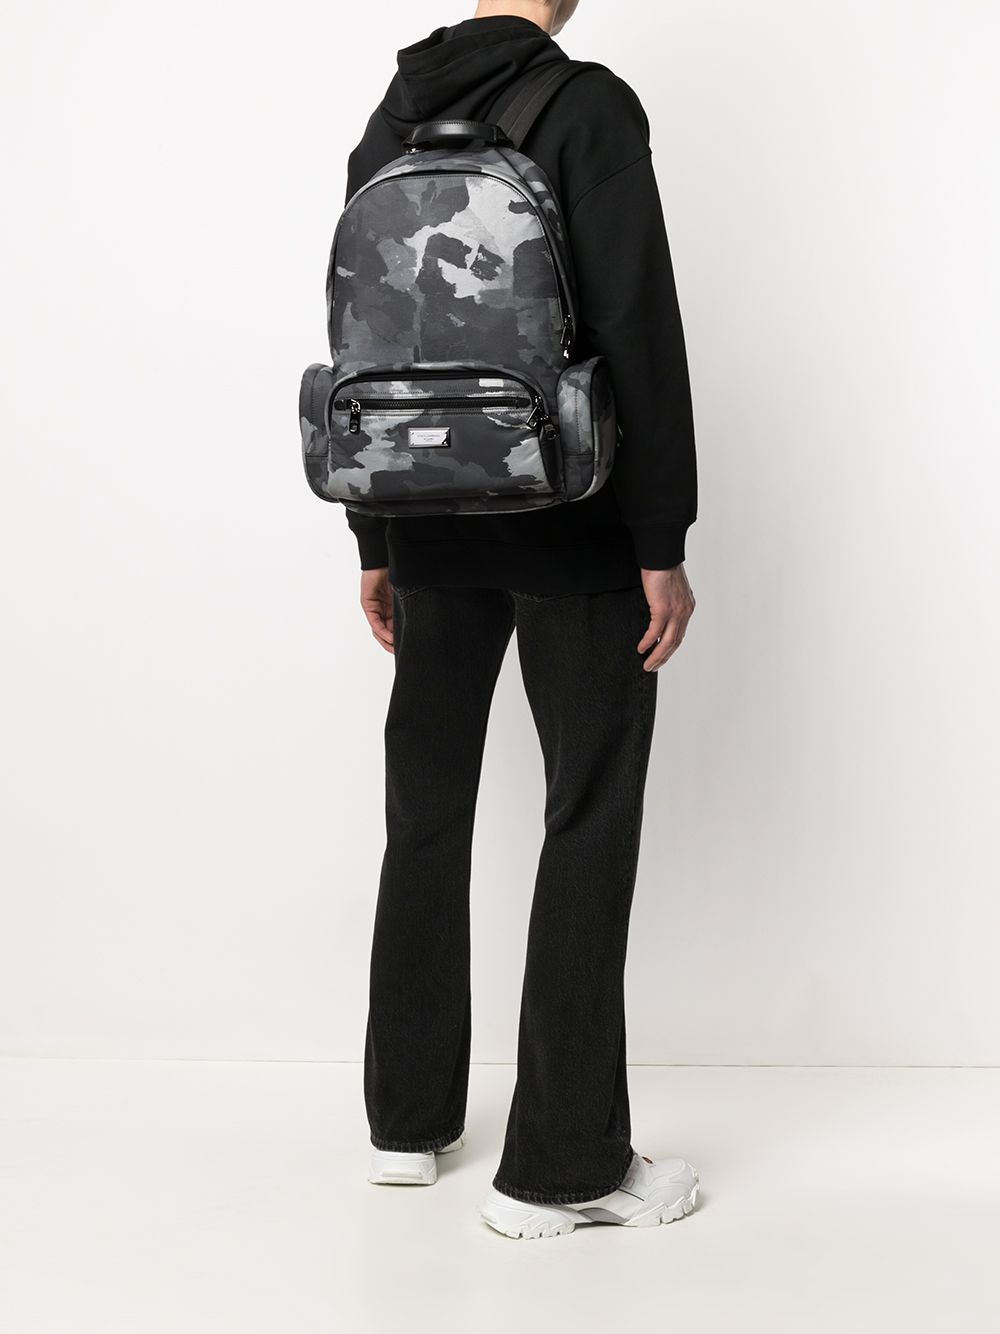 фото Dolce & gabbana рюкзак с камуфляжным принтом и логотипом